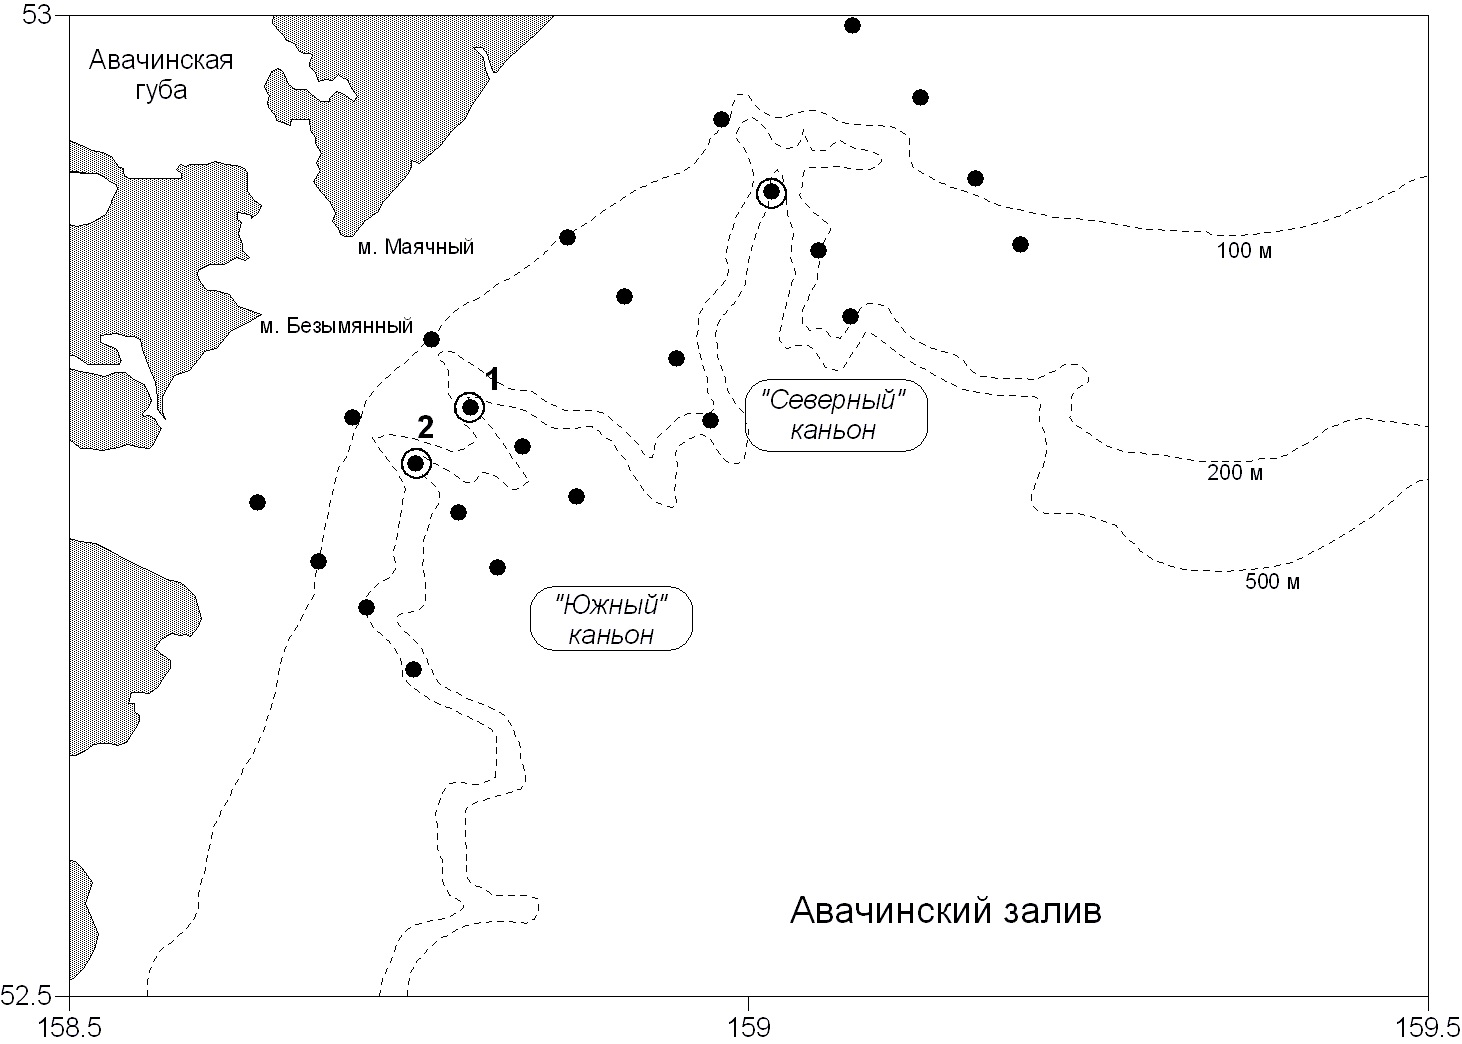 Рисунок 1. Схема расположения «реперных» точек (1, 2, 3) для выполнения ихтиопланктонных станций в районе каньонов Авачинского залива